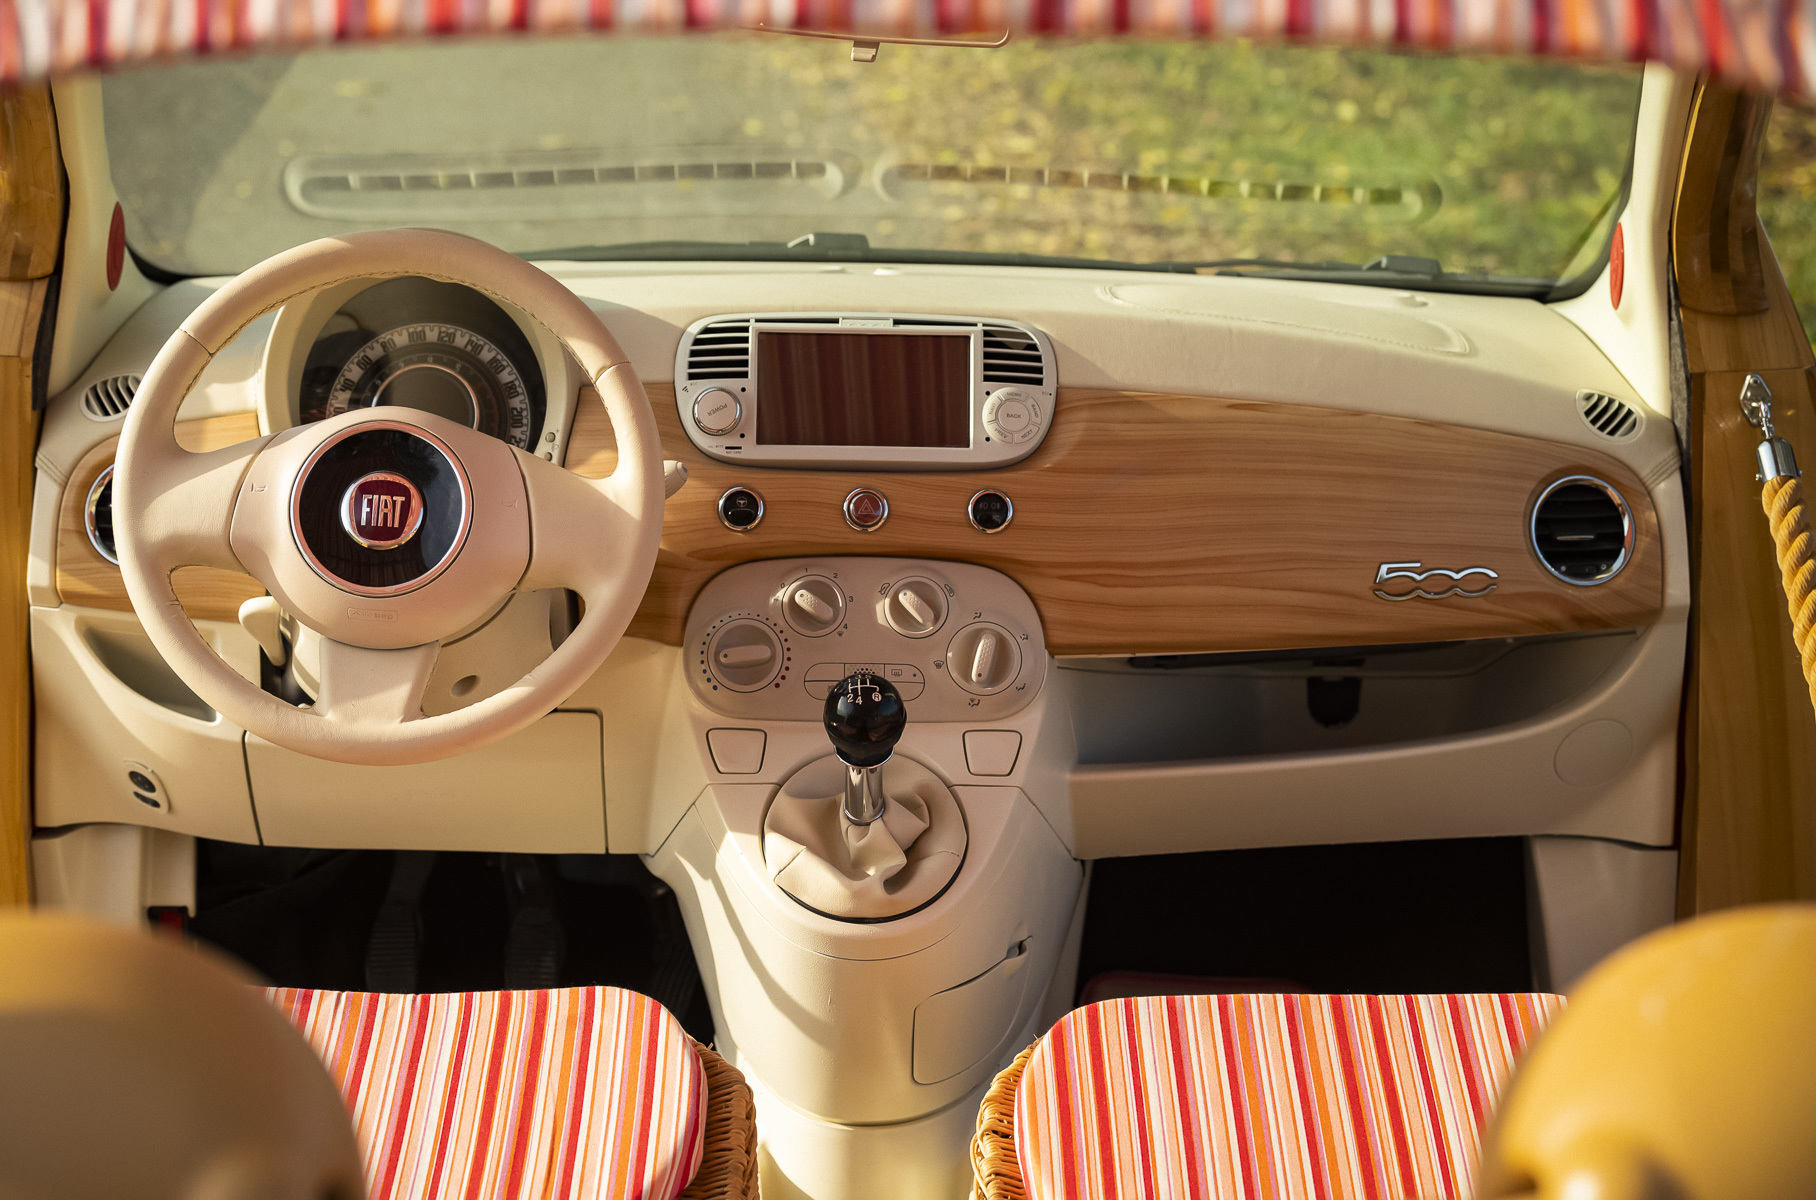 Посмотрите на пляжный Fiat 500 без дверей, крыши и с плетёным интерьером